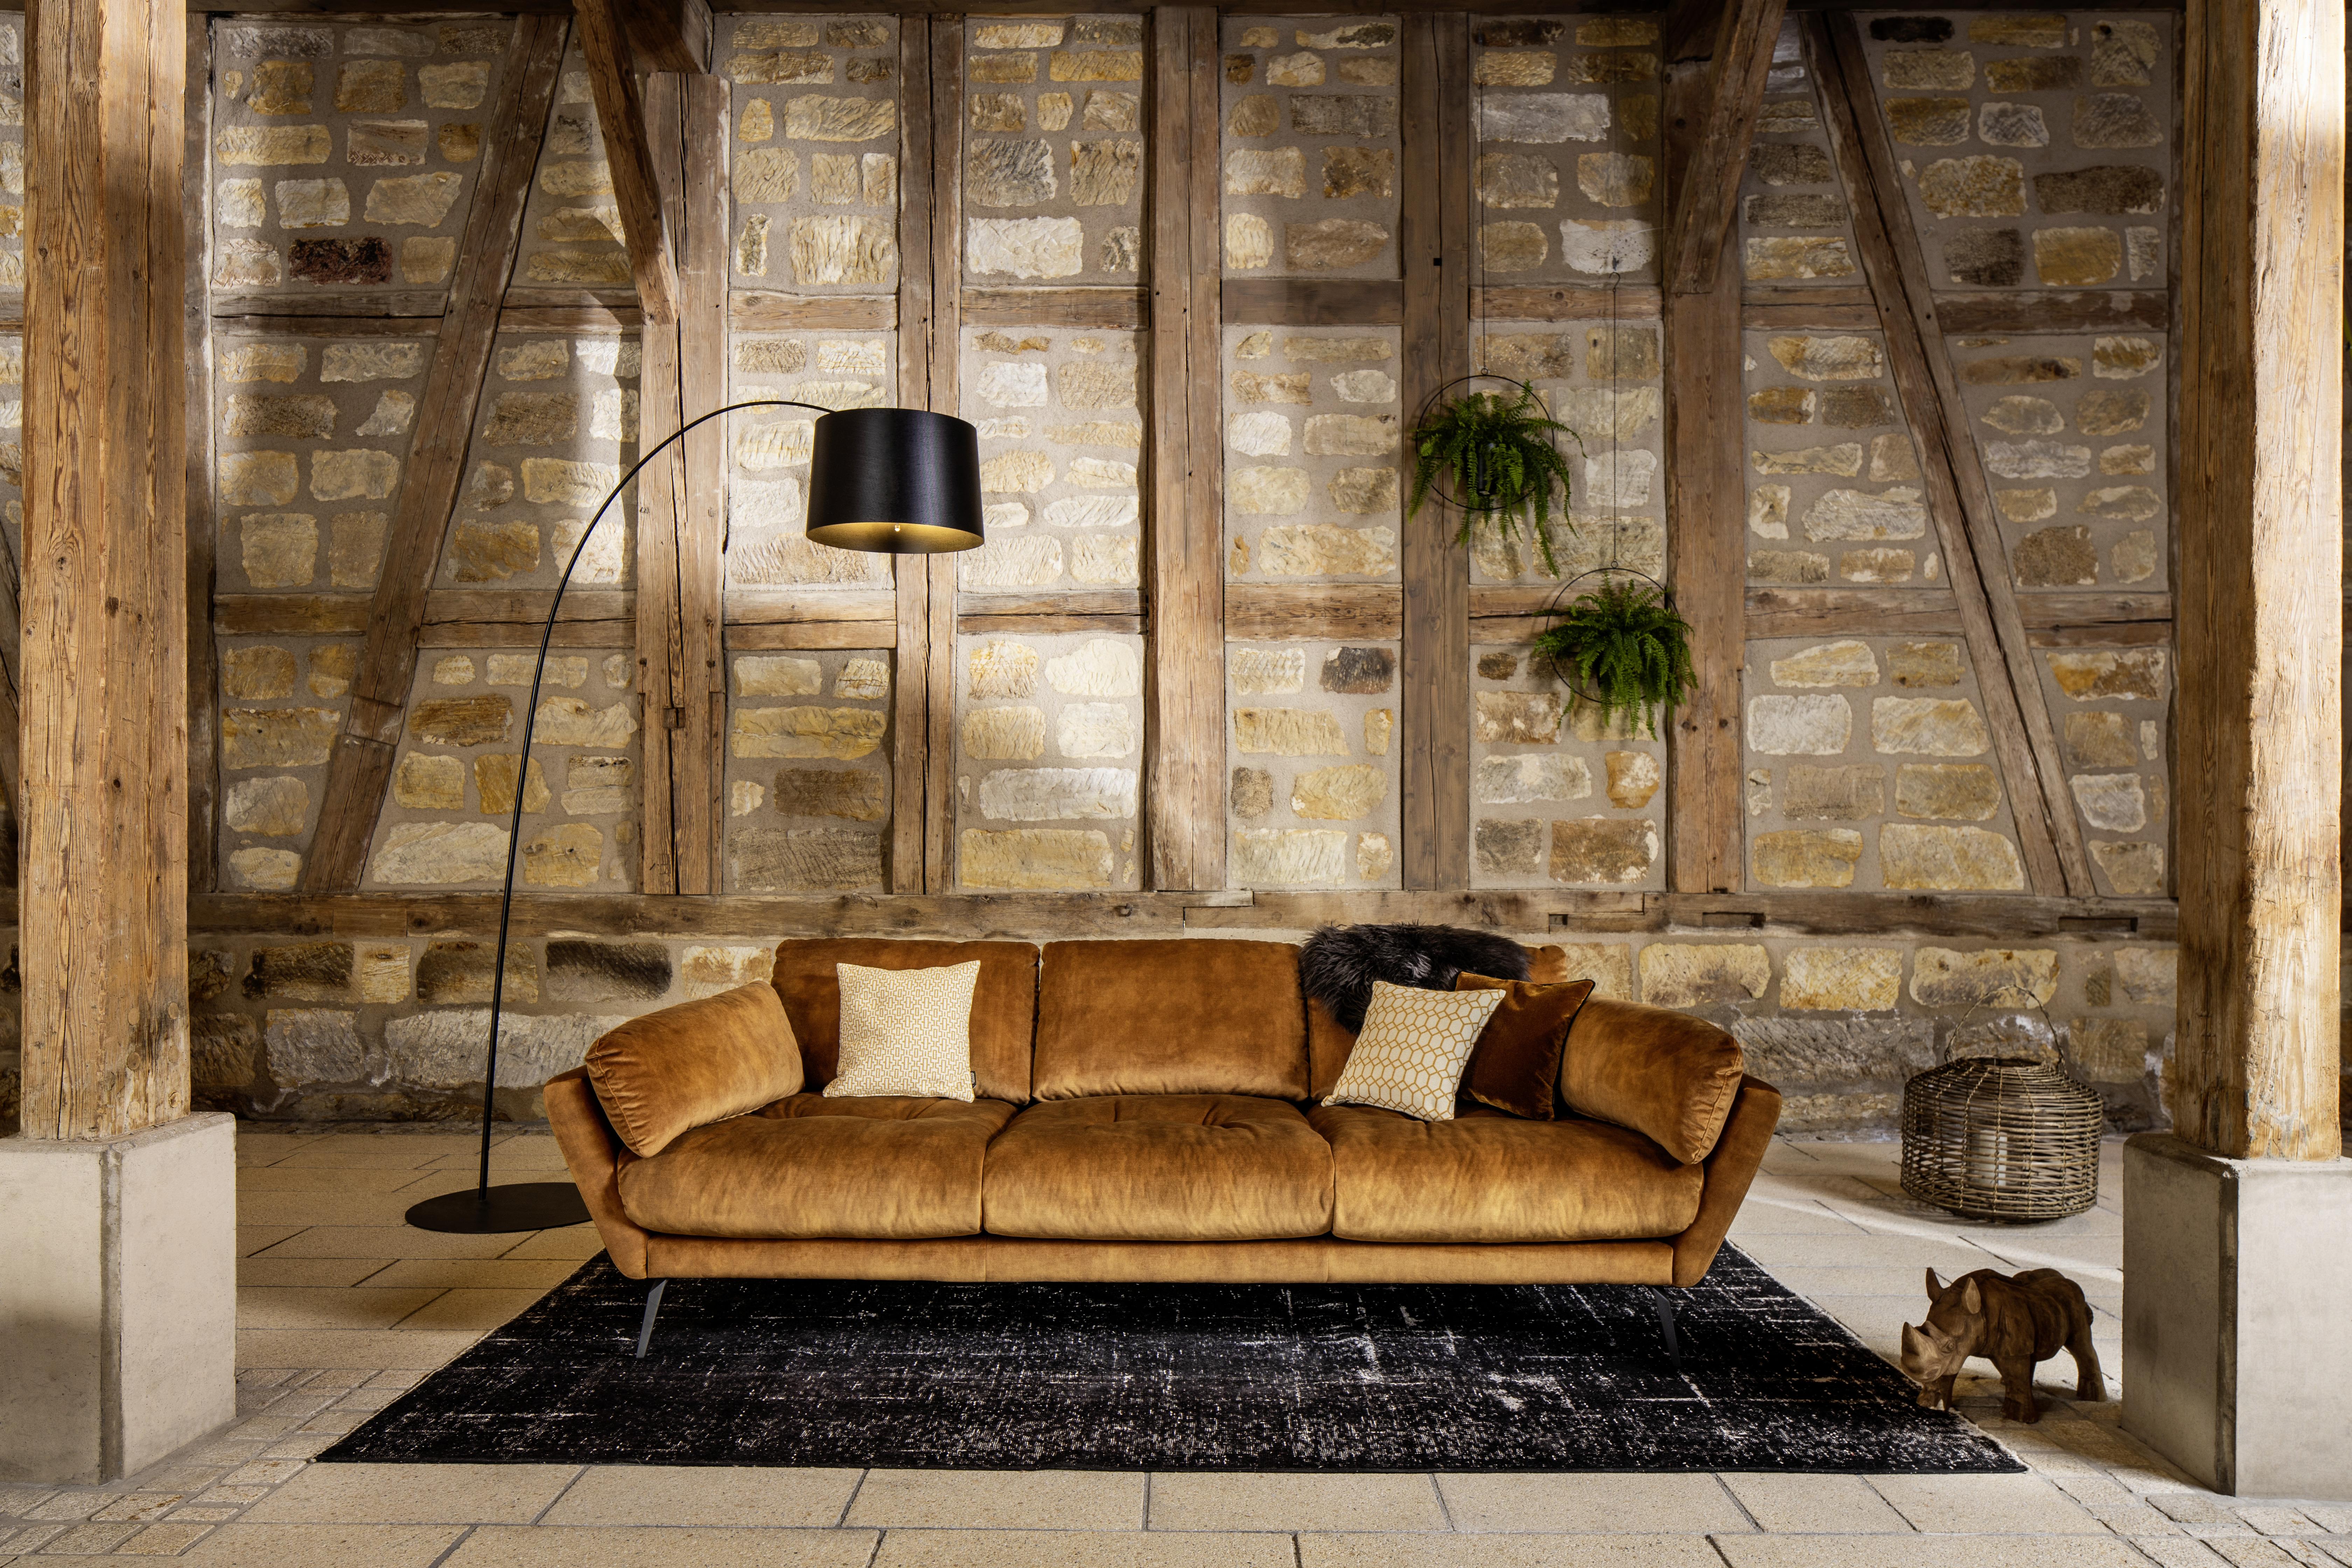 Big Sofa Softy mit Kissen B: 254 cm Cognac Velours - Cognac/Schwarz, MODERN, Textil (254/79/113cm) - W.Schillig